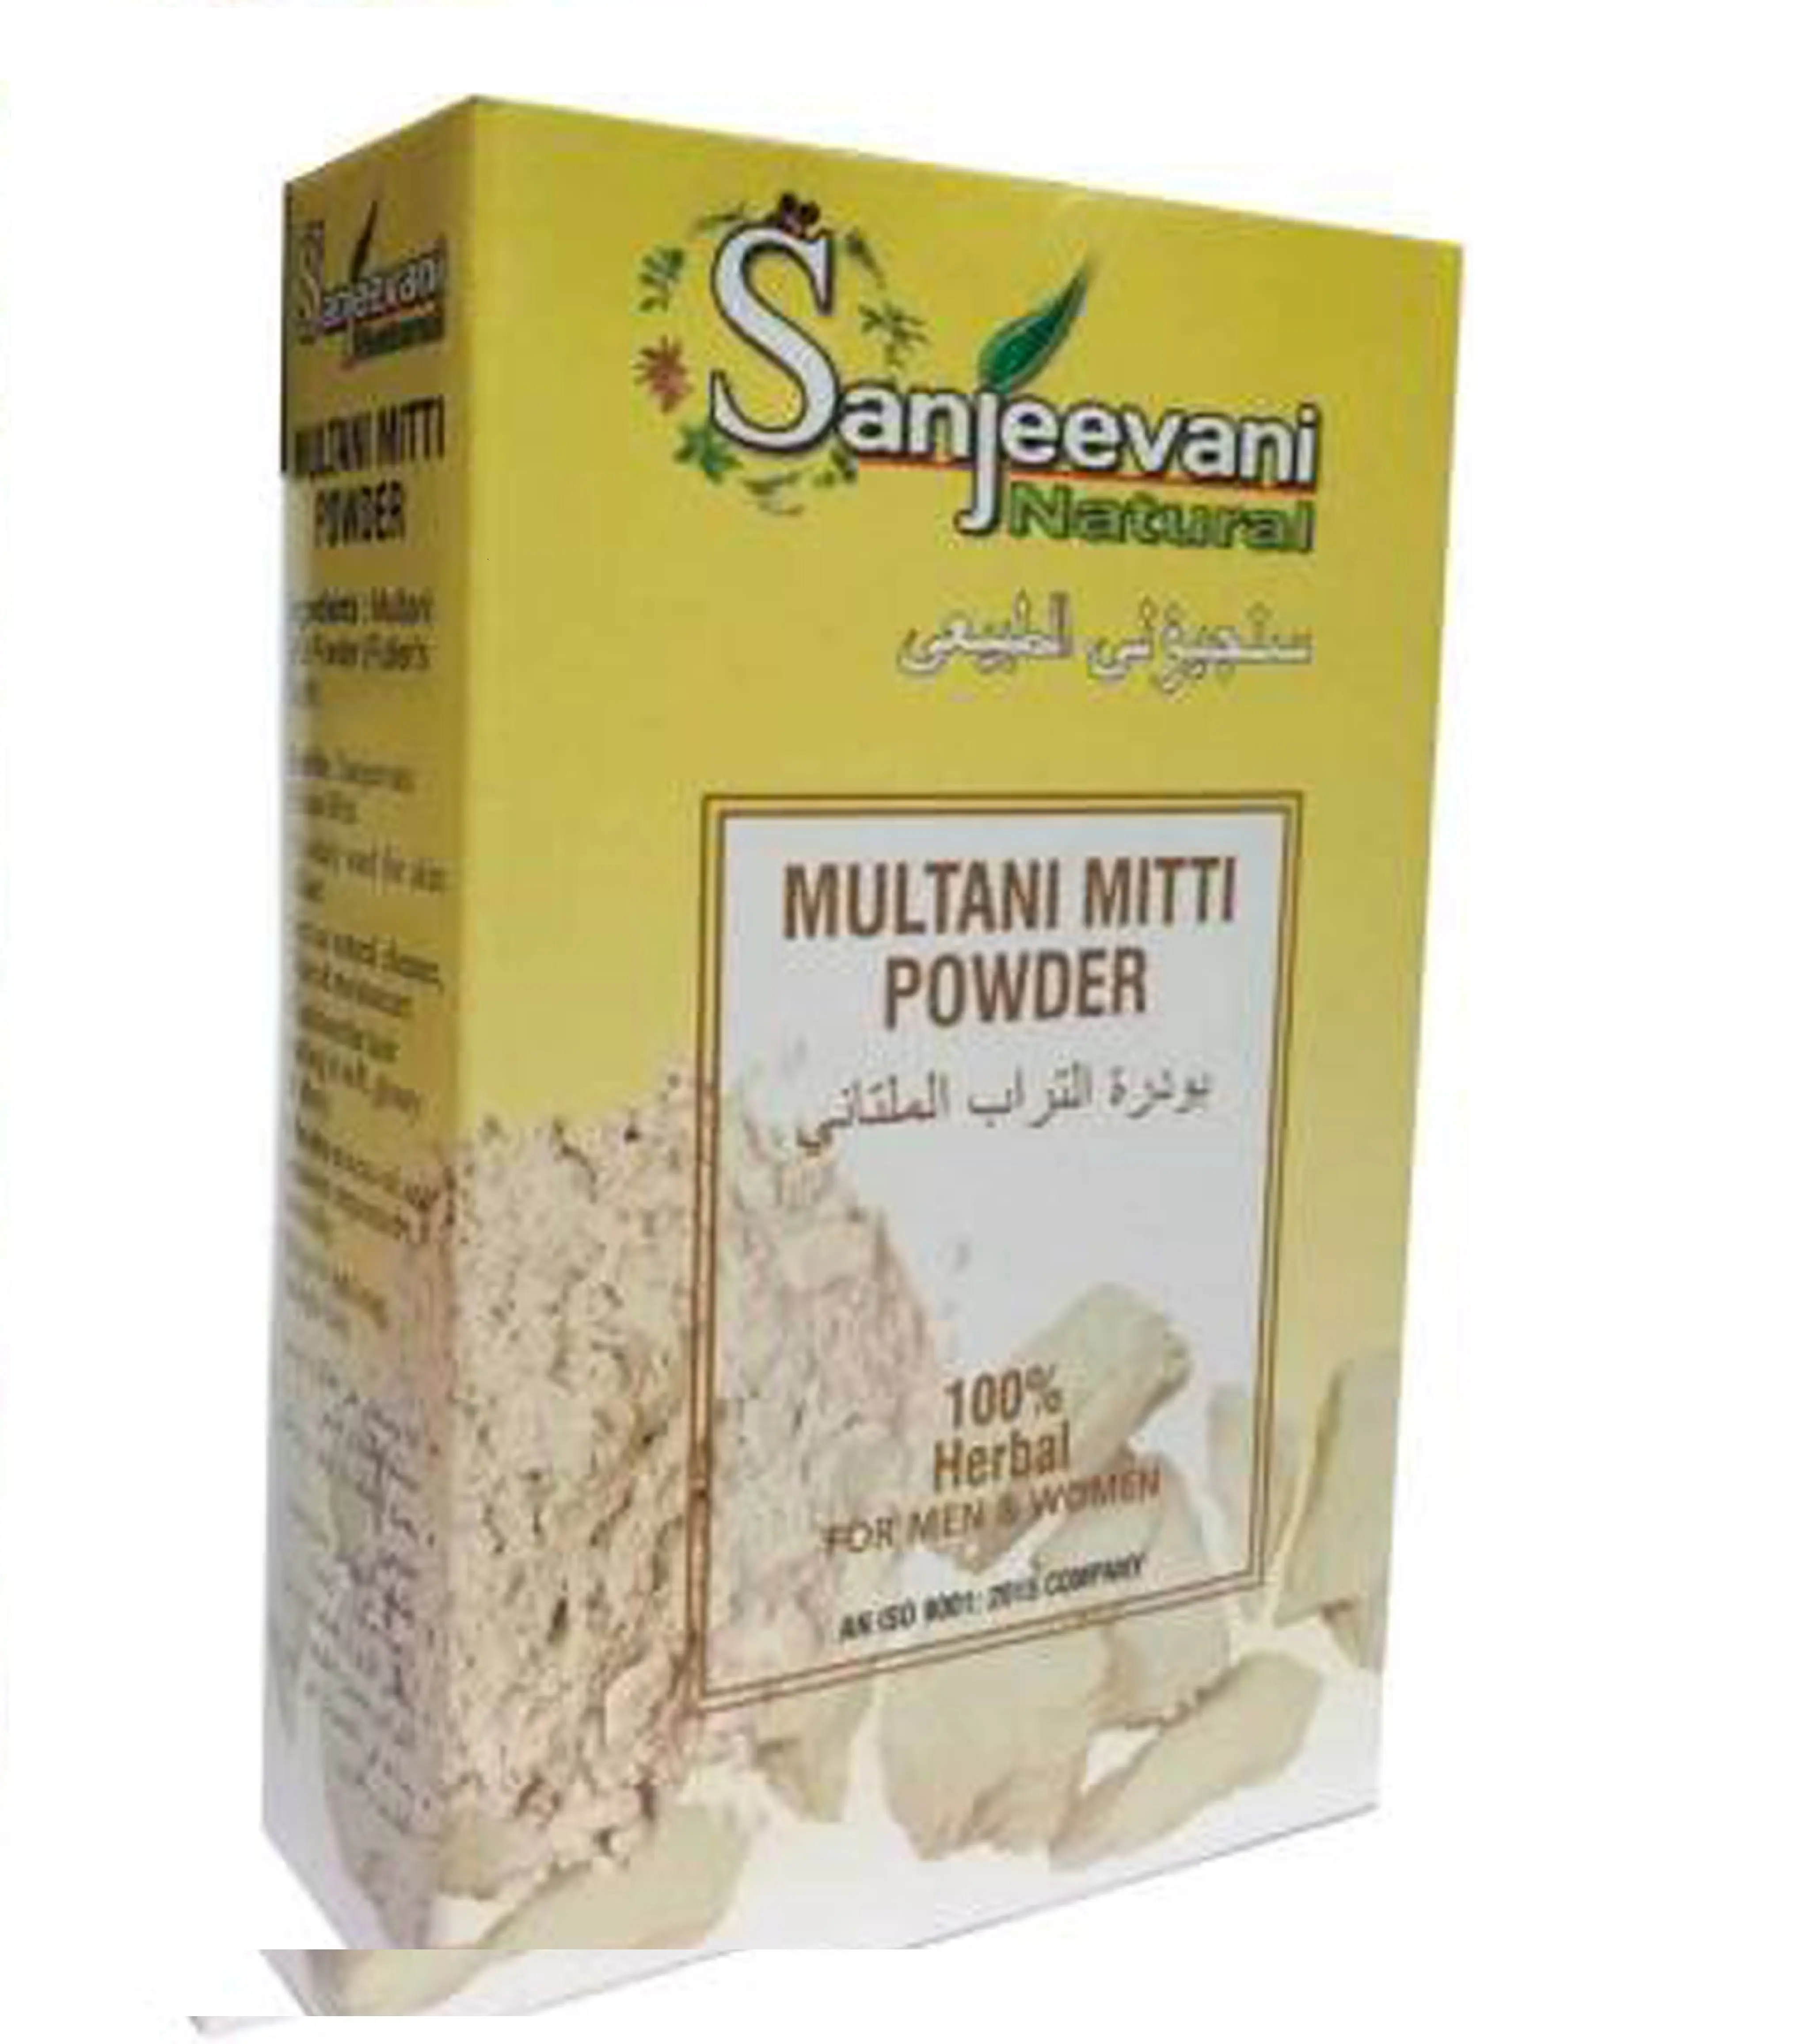 บริสุทธิ์อินเดีย100% ธรรมชาติ Multani Mitti ผงในราคาที่ดีที่สุด